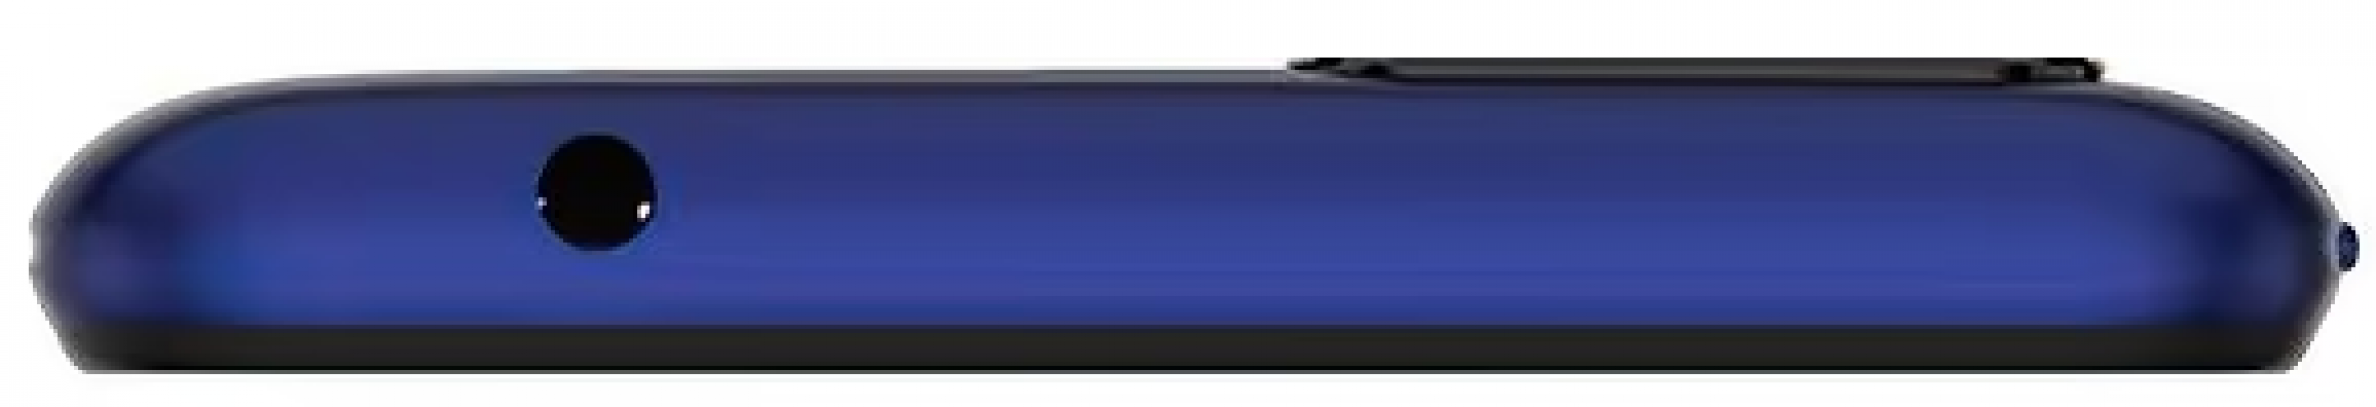 Смартфон Tecno POP 2F 1GB/16GB Dawn Blue